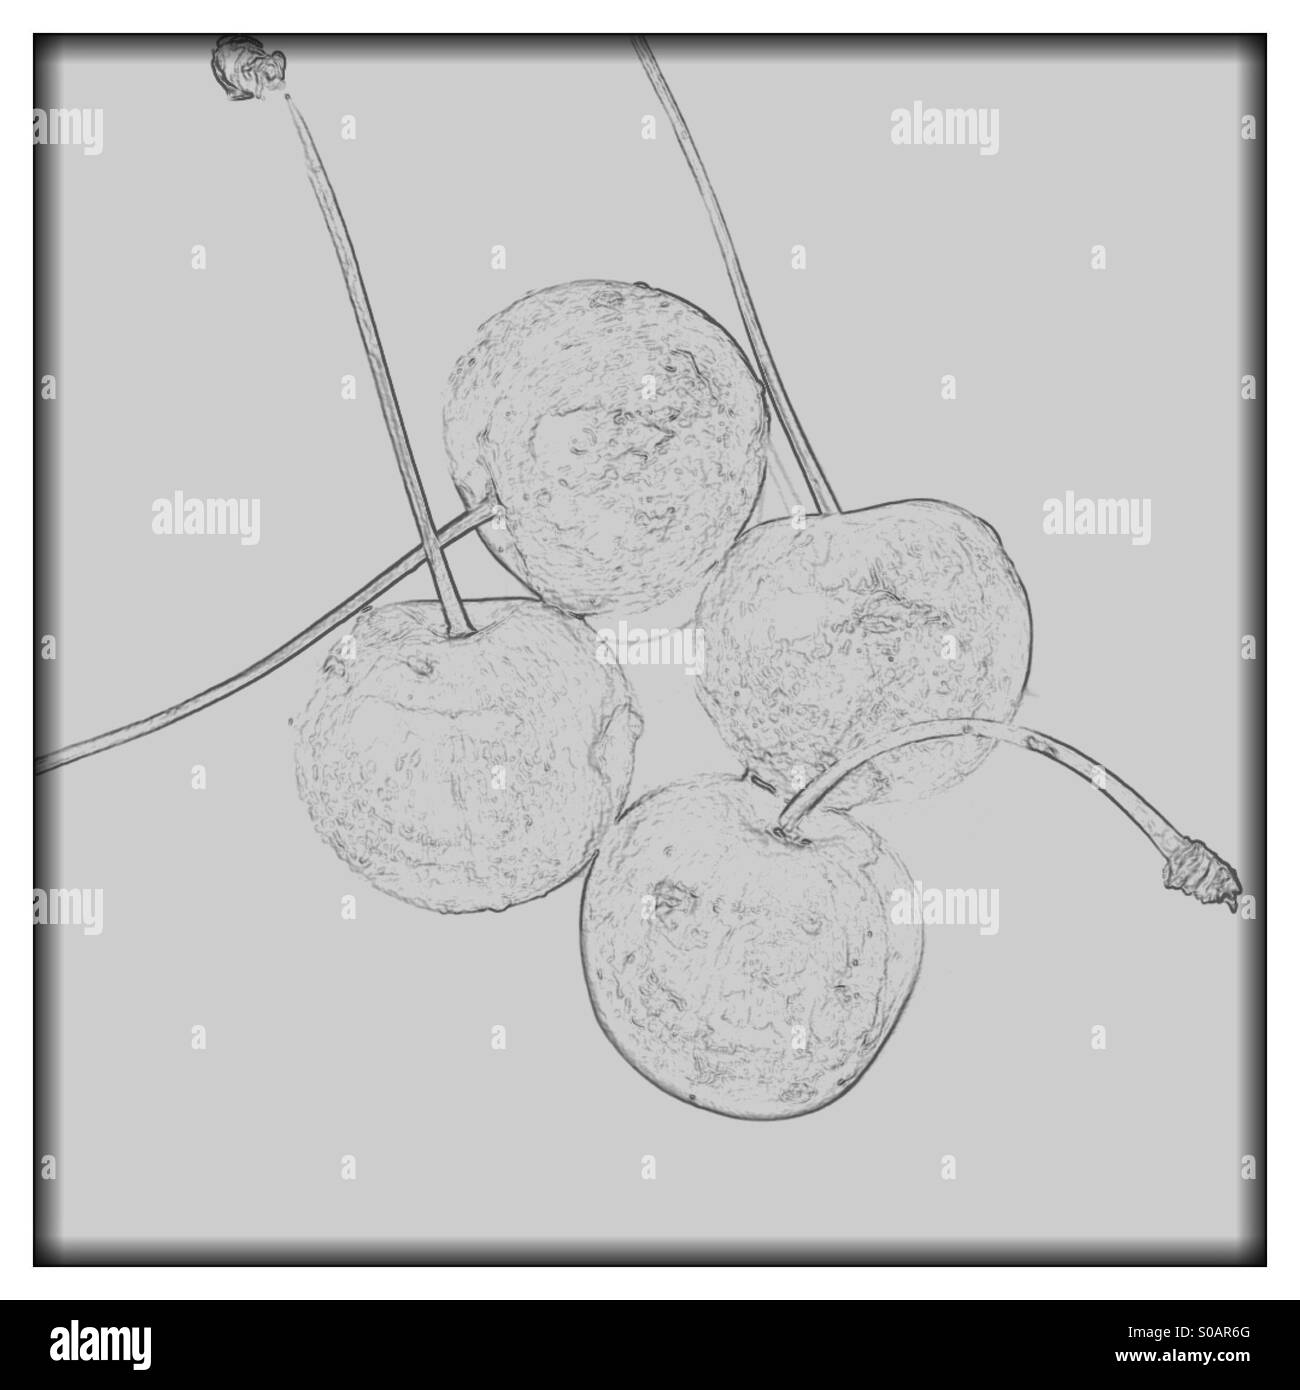 Bianco e nero semi trasparente schizzo a matita immagine di quattro ciliegie su uno sfondo semplice Foto Stock